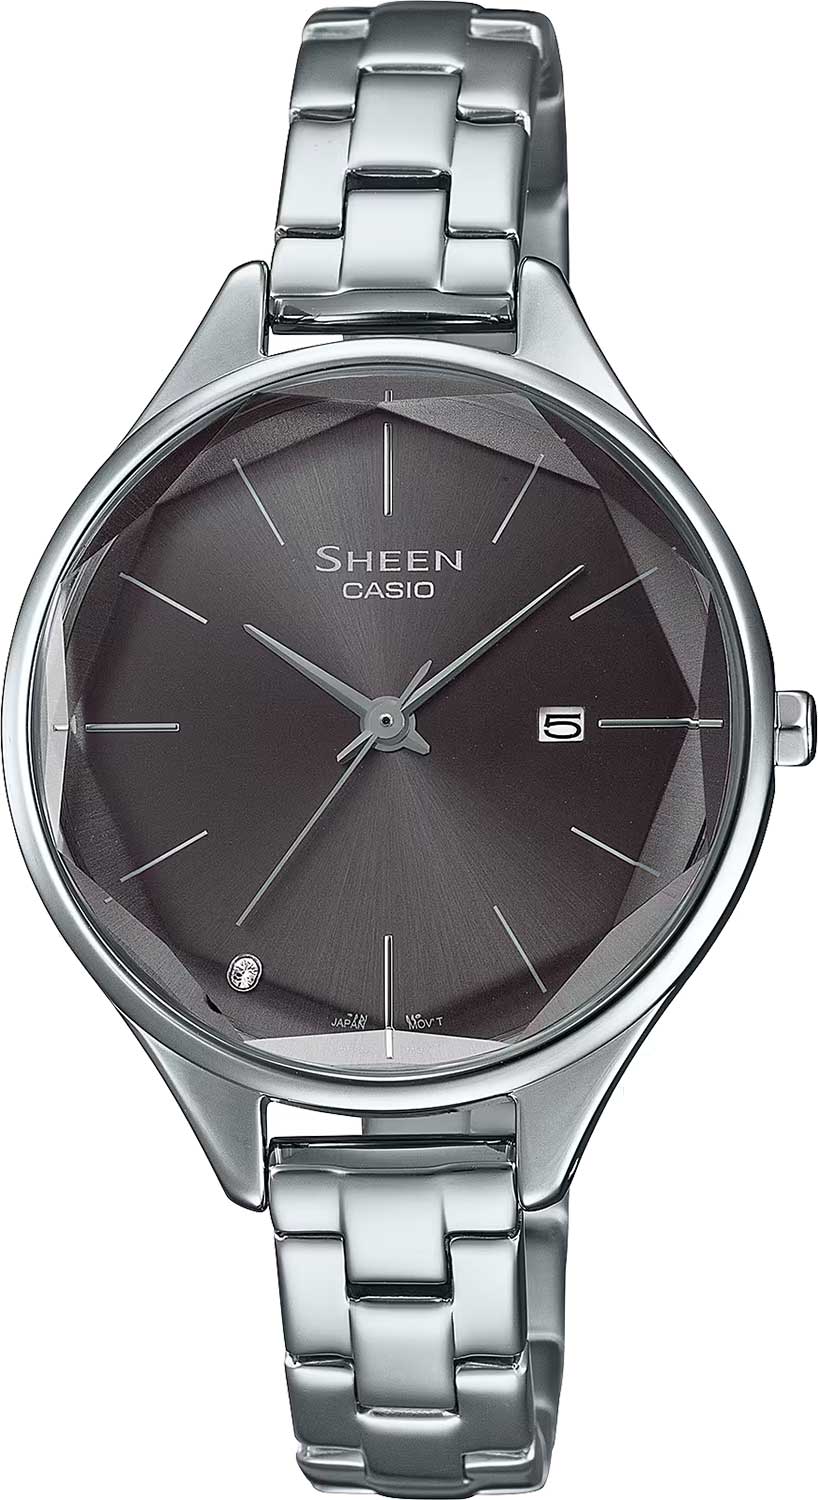    Casio Sheen SHE-4062D-8A